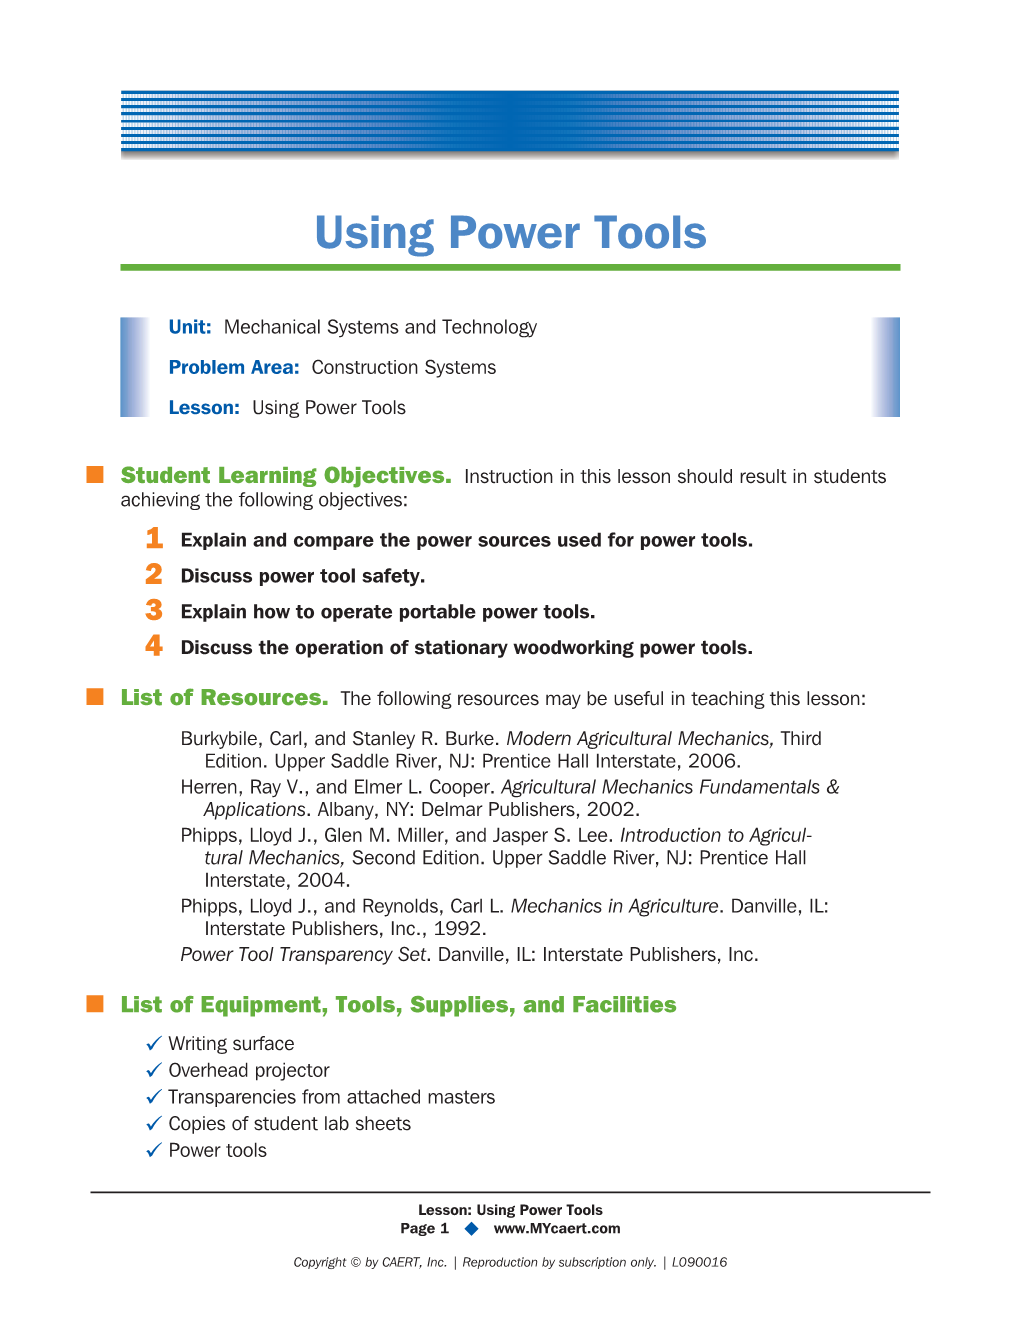 Using Power Tools Lesson Plan.Pdf